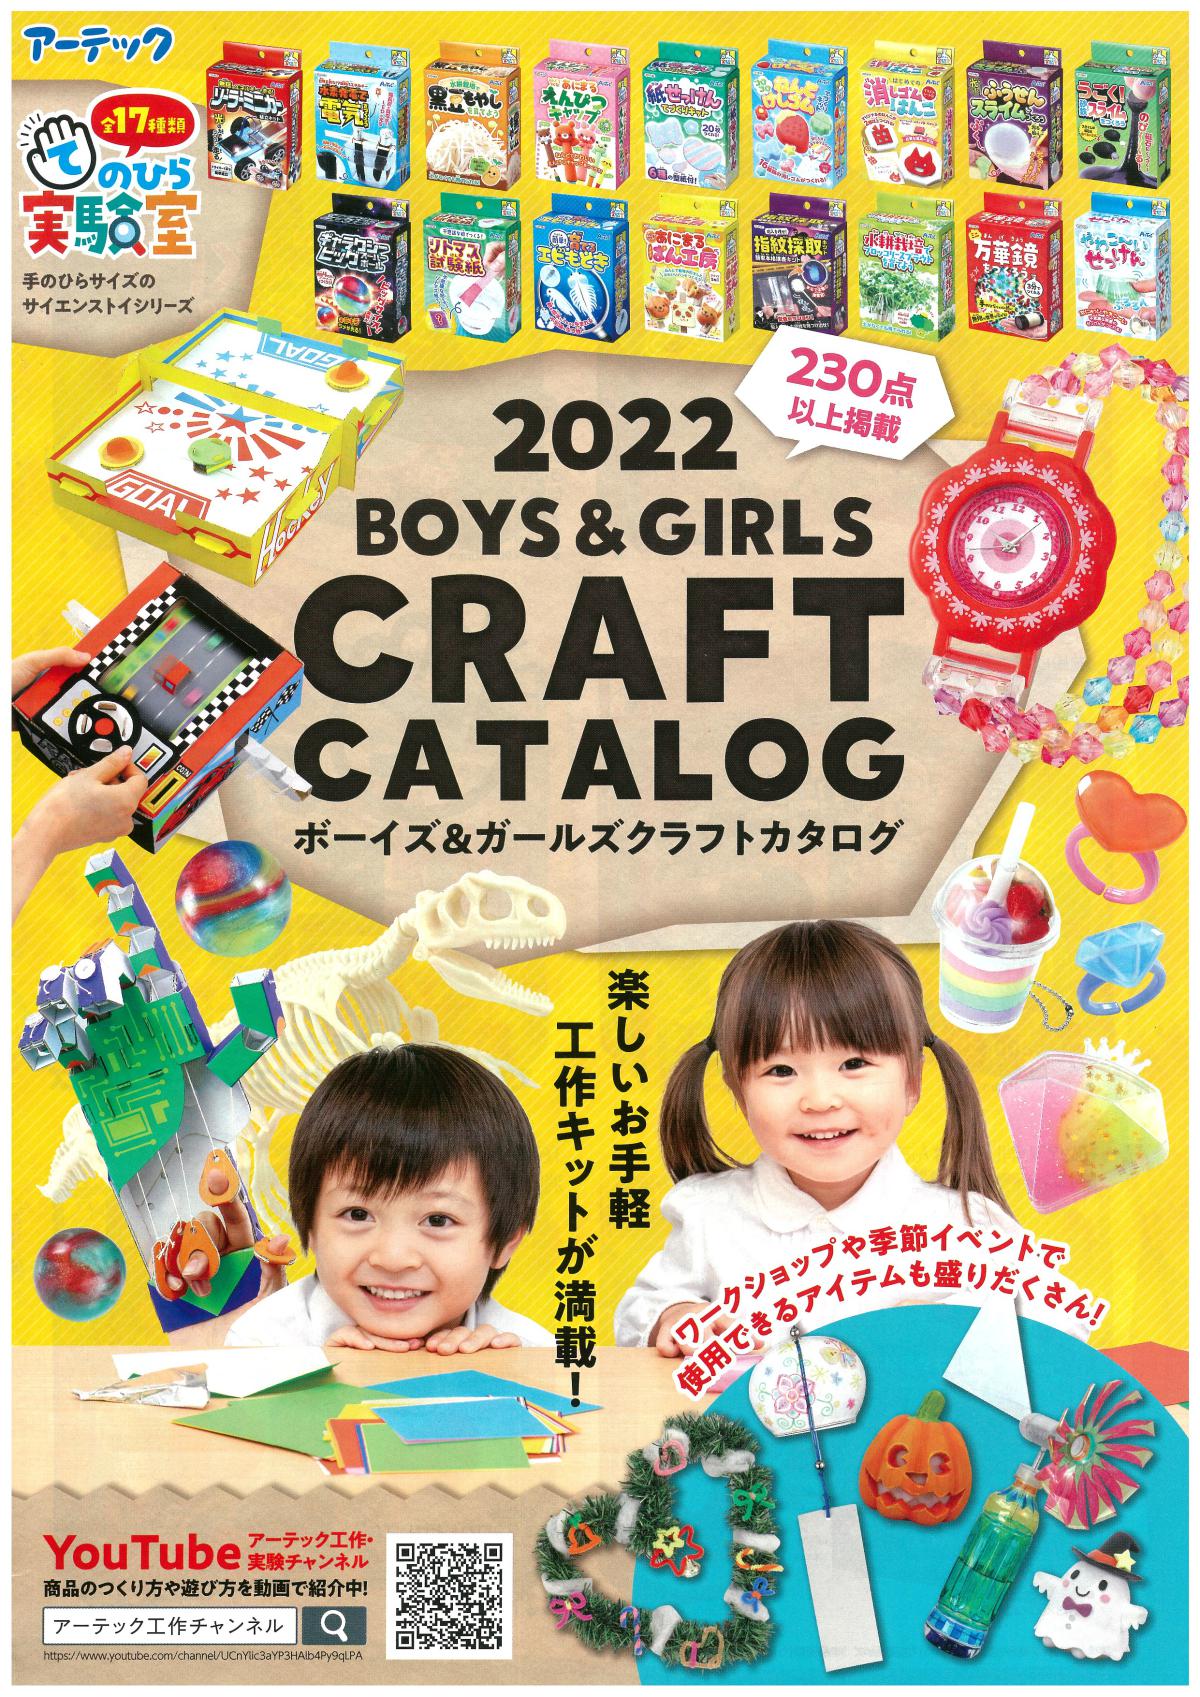 こども向けワークショップに使える工作カタログ2022Boys＆Girls CRAFT CATALOG発刊されました。